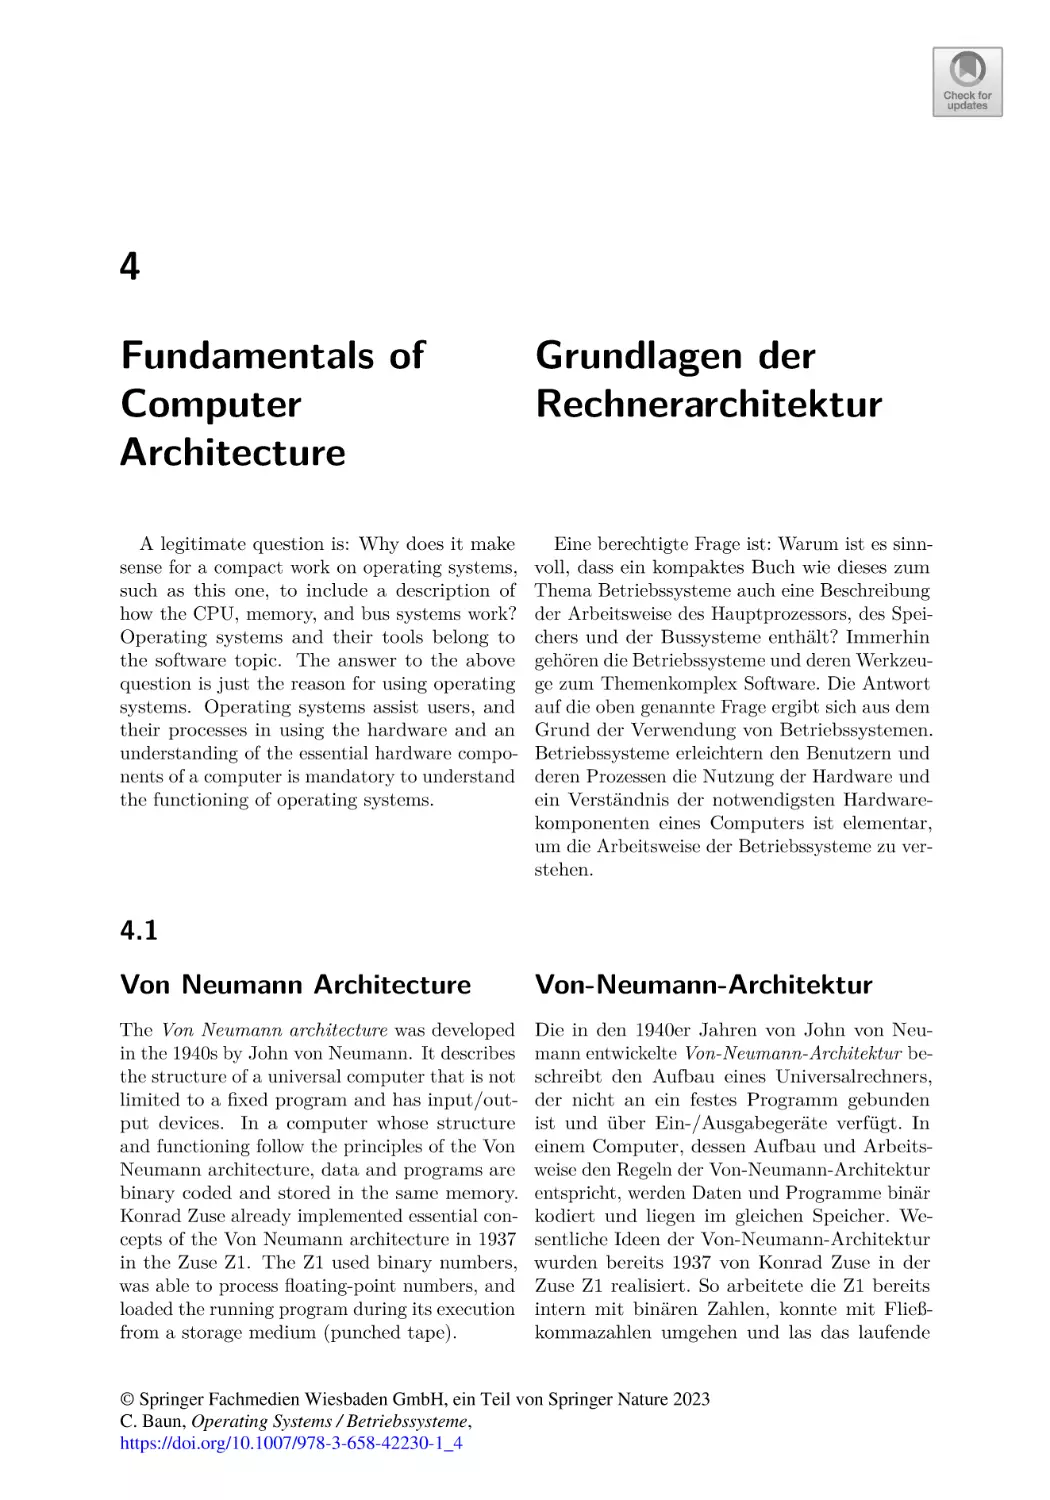 4
Fundamentals of Computer Architecture
4.1
Von Neumann Architecture